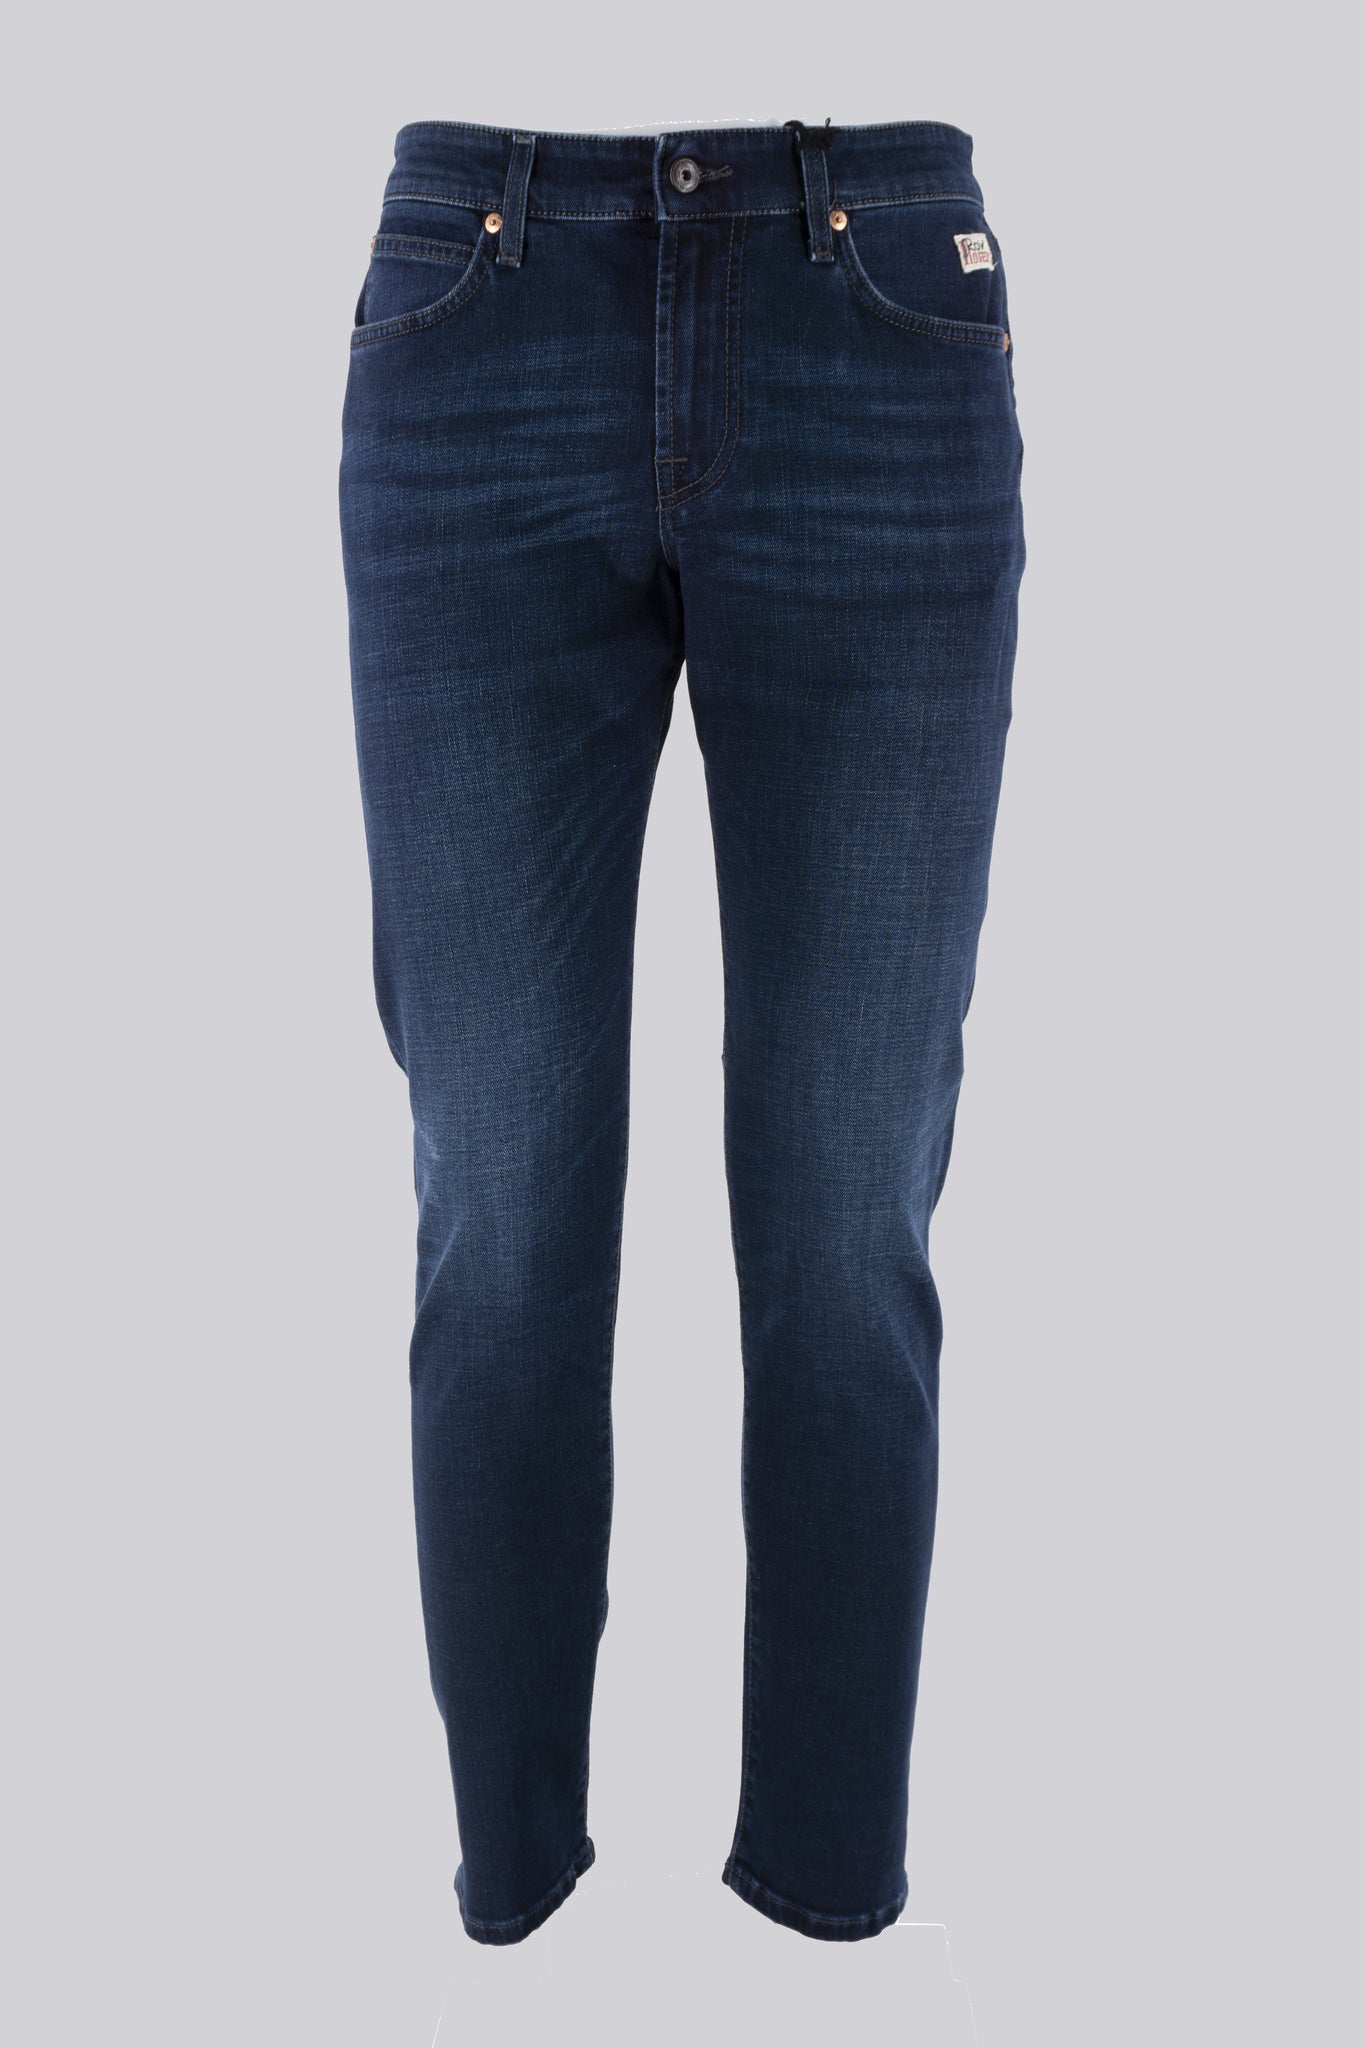 Jeans Lavaggio Scuro Dublin / Jeans - Ideal Moda